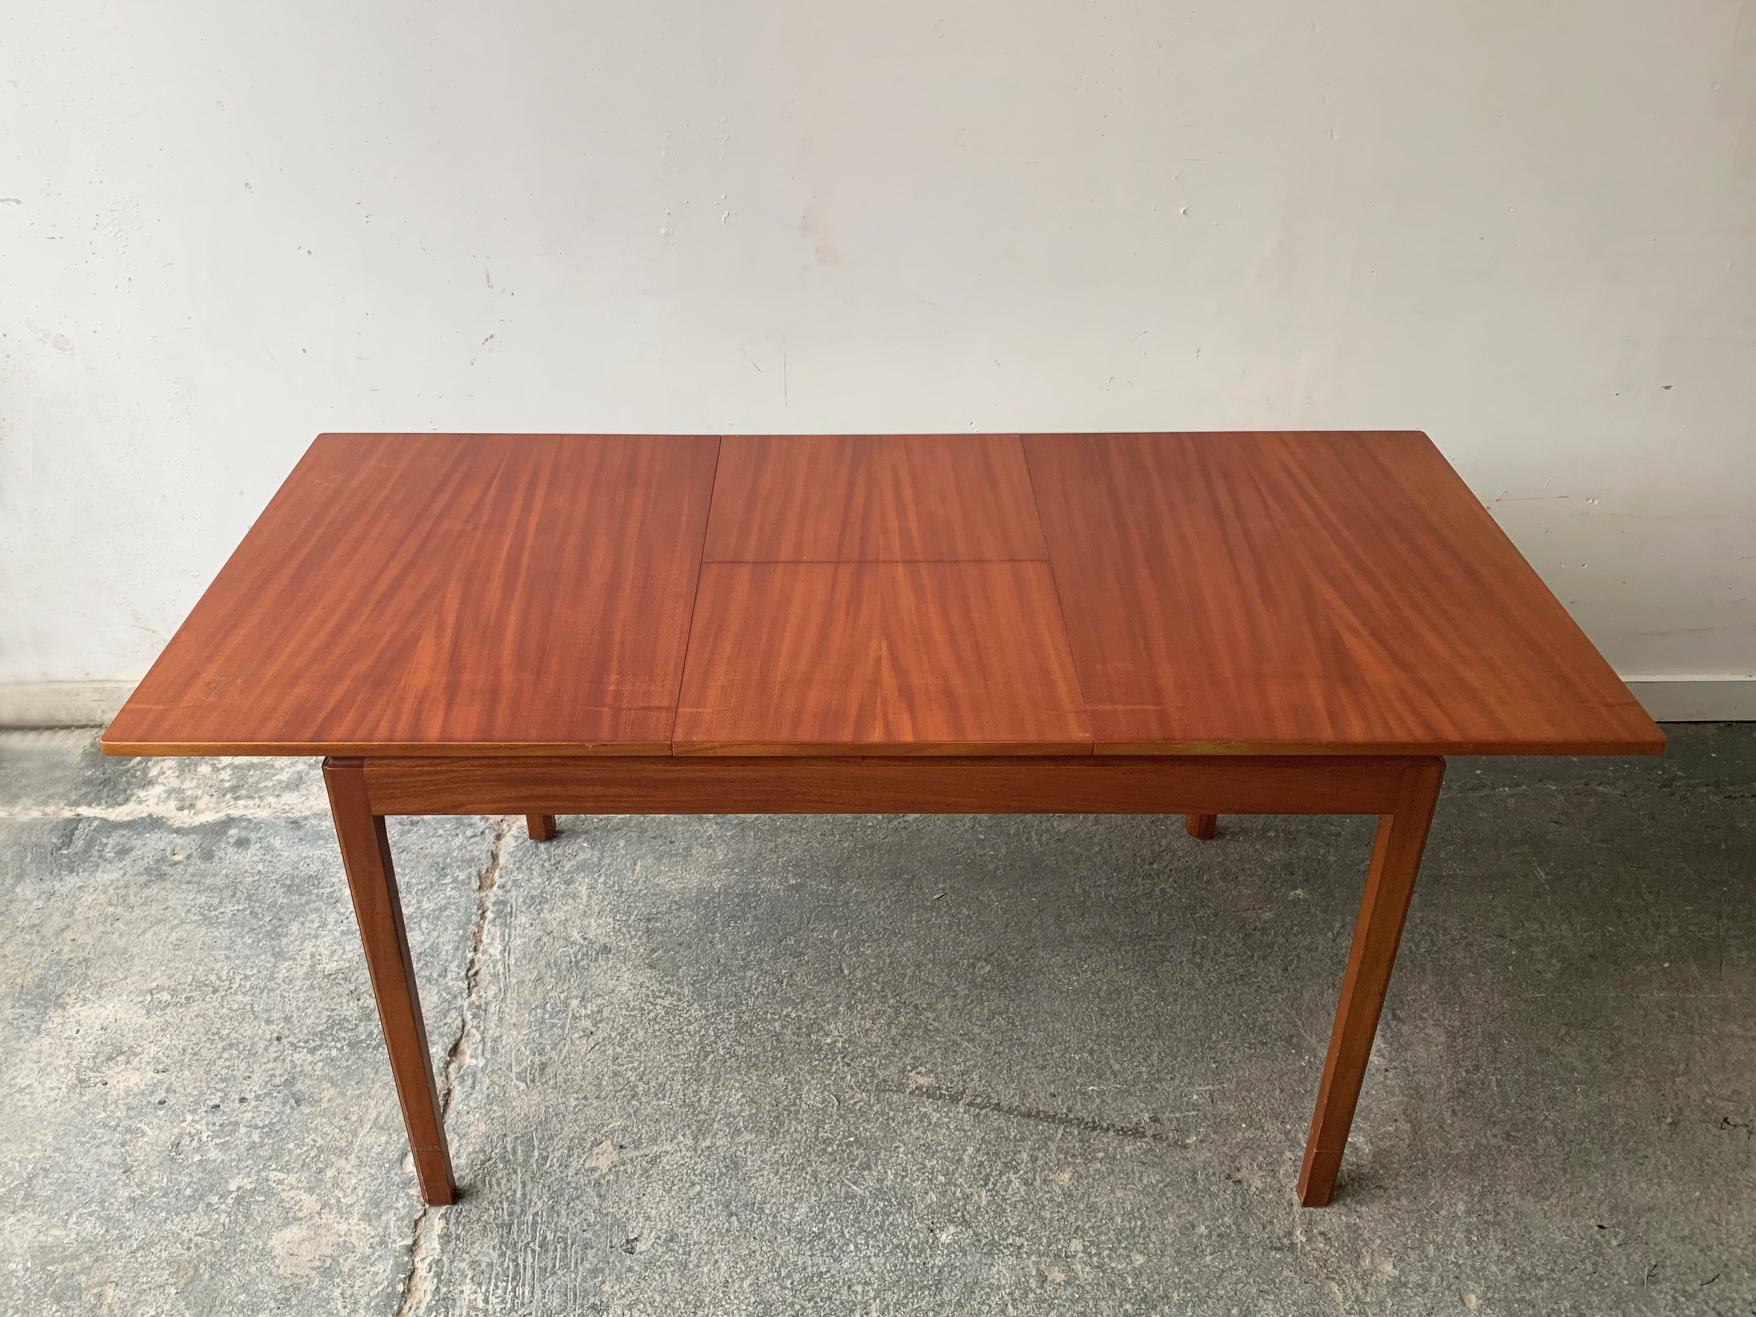 Table de salle à manger de style danois, minimaliste et épurée, avec un plateau subtilement surélevé. Produit dans les années 1960 par le fabricant très respecté A.H.Mcintosh & co. Ltd. de Kirkcaldy, en Écosse, au Royaume-Uni.

4 chaises de salle à